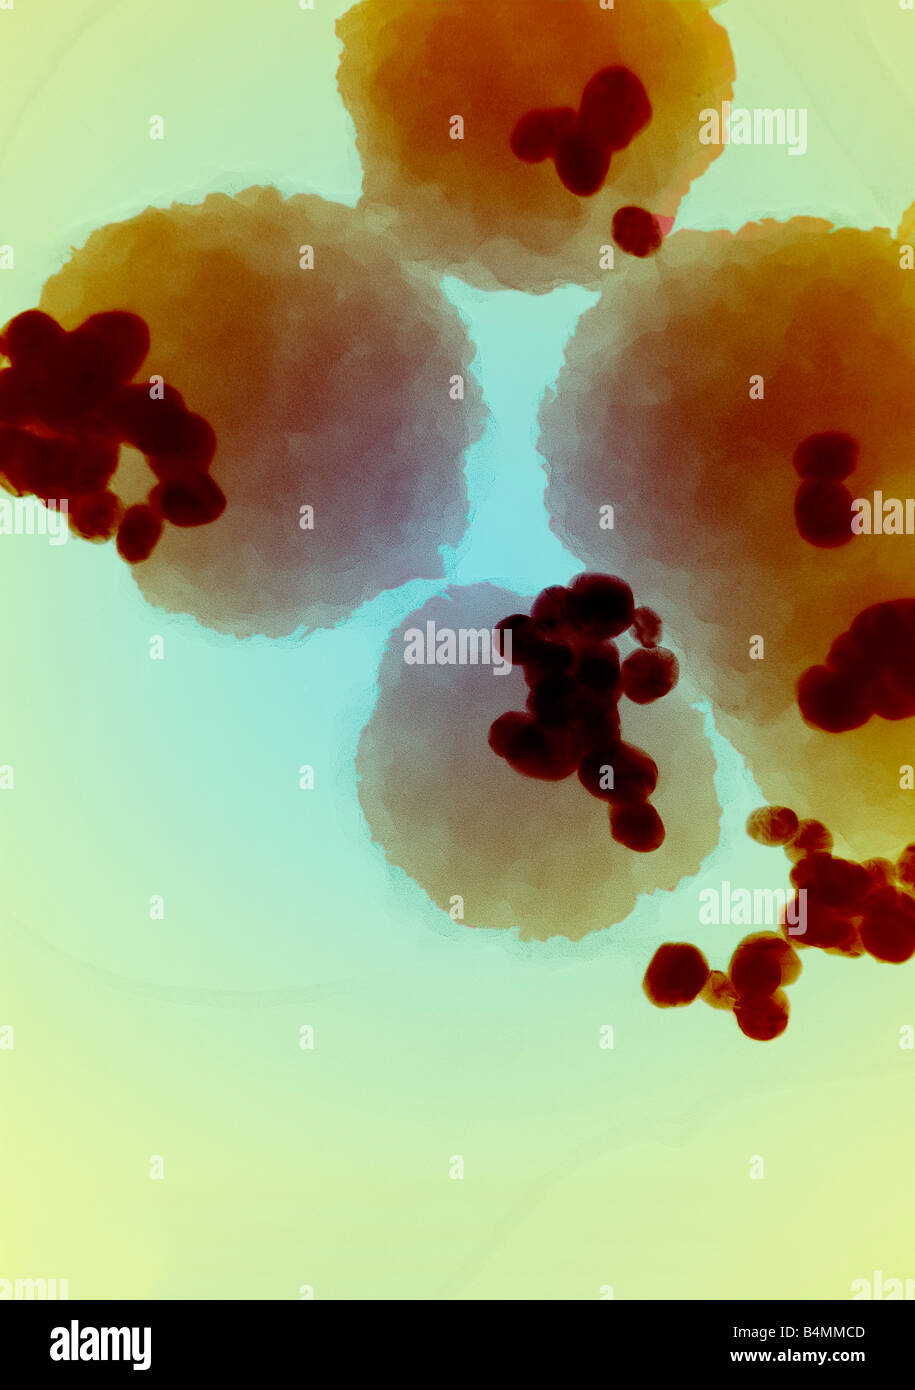 Immagine a falsi colori del cancro cellule attaccate alle cellule umane normali prima del trattamento. Applicazioni mediche di Nanotecnology Foto Stock